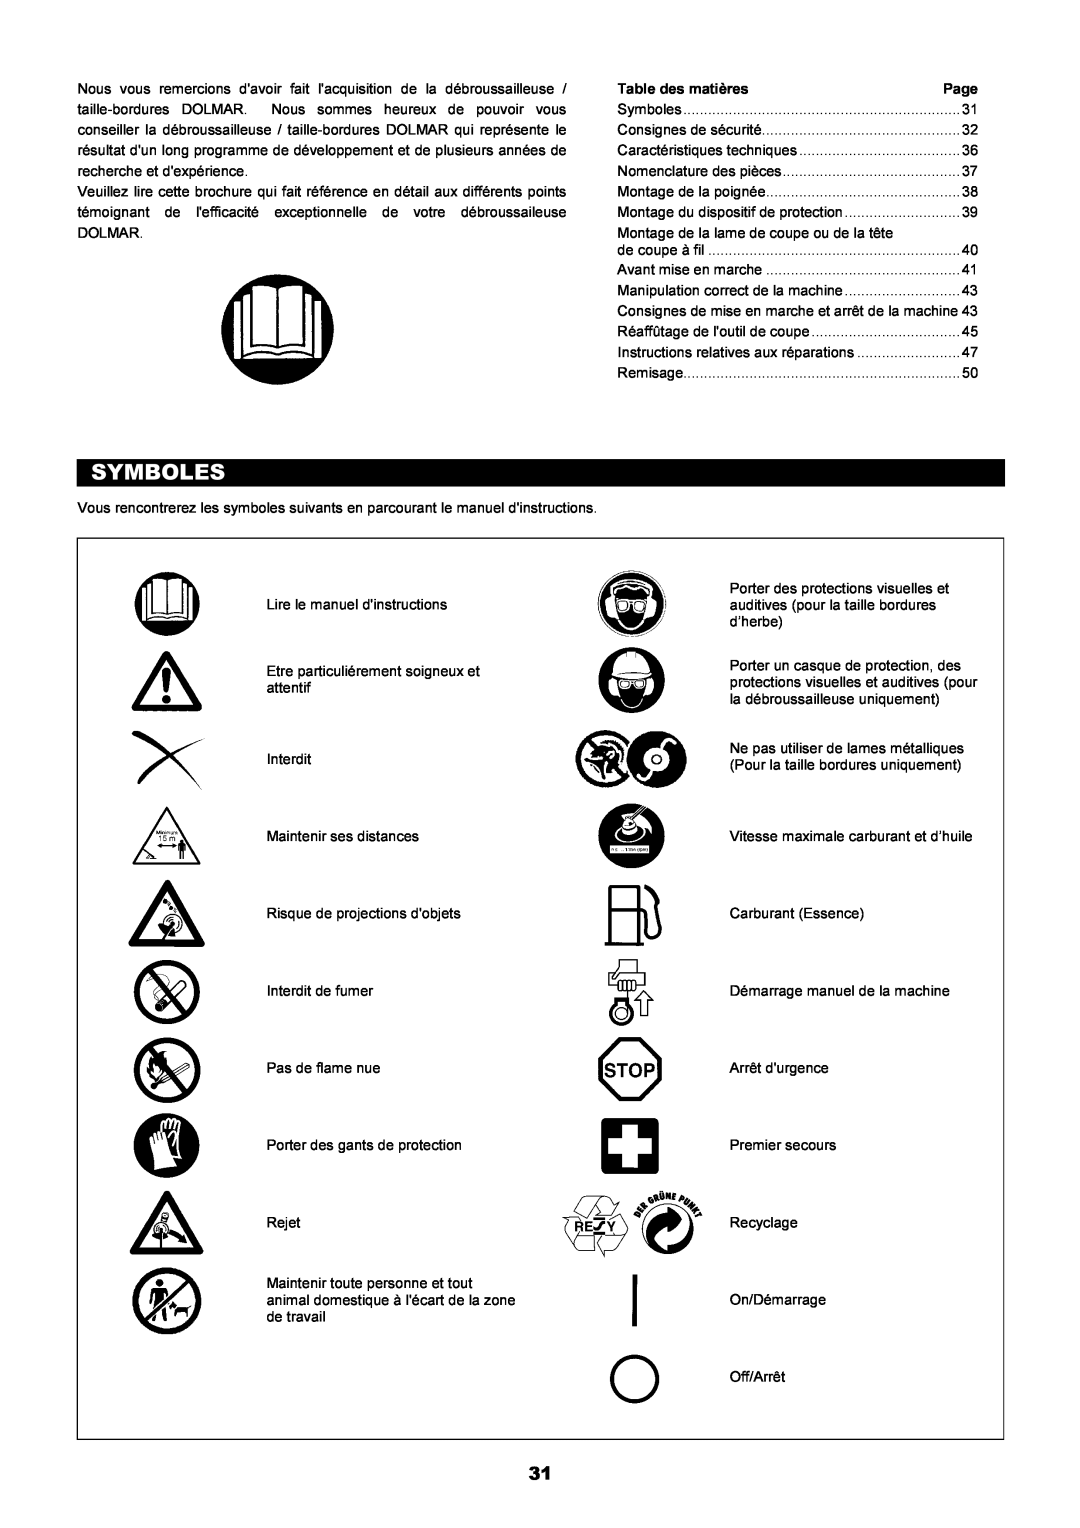 Dolmar MS-250.4, MS-251.4 instruction manual Symboles, Consignes de mise en marche et arrêt de la machine 